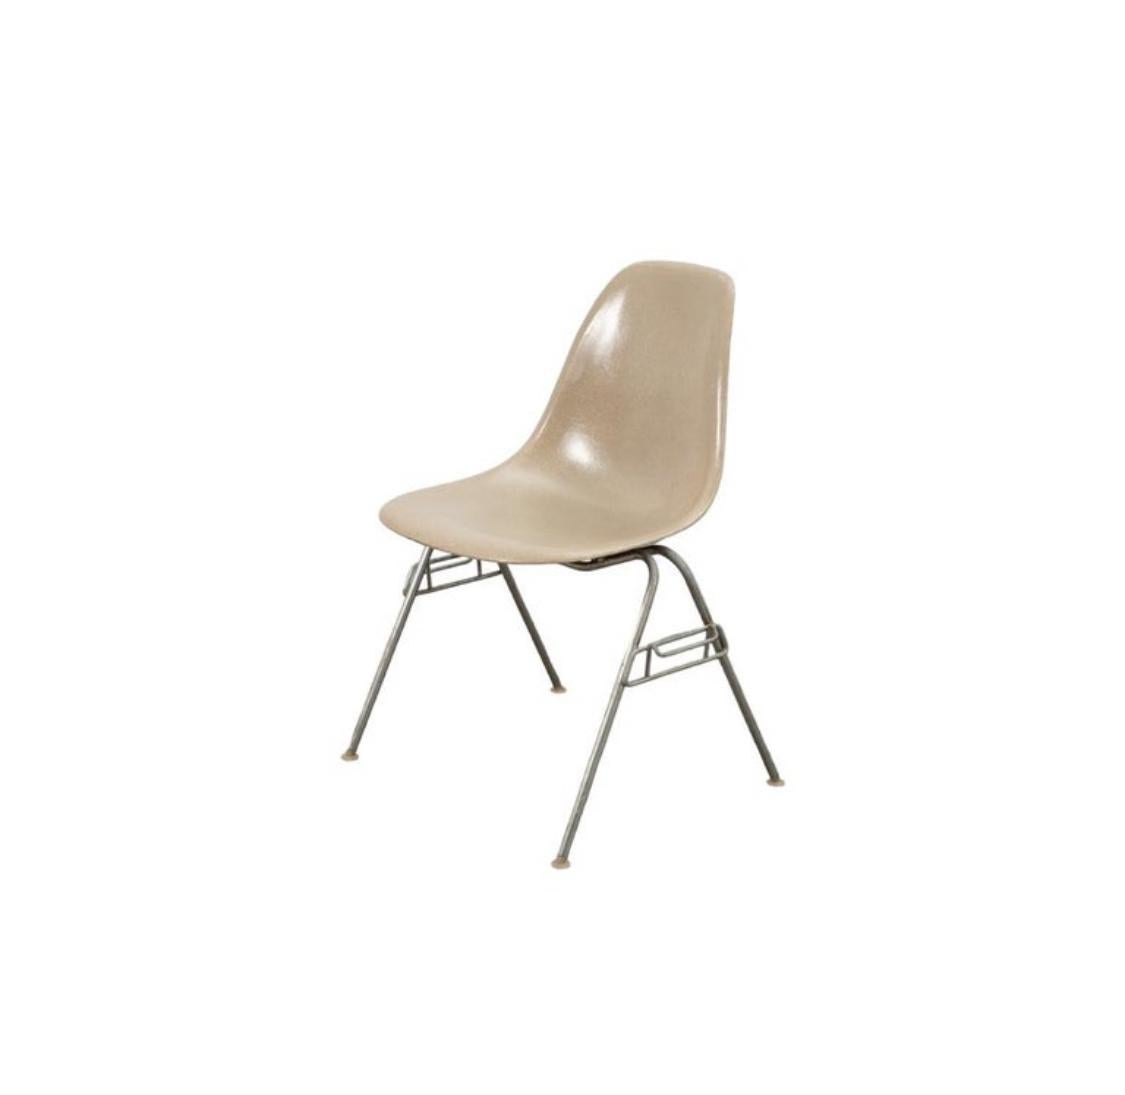 Satz von 4 Herman Miller Eames Esszimmerstühlen aus Fiberglas. Signiert und garantiert echt. Stapelböden aus Stahl mit selbstnivellierenden Füßen aus Nylon. In gutem, gleichmäßigem Zustand.